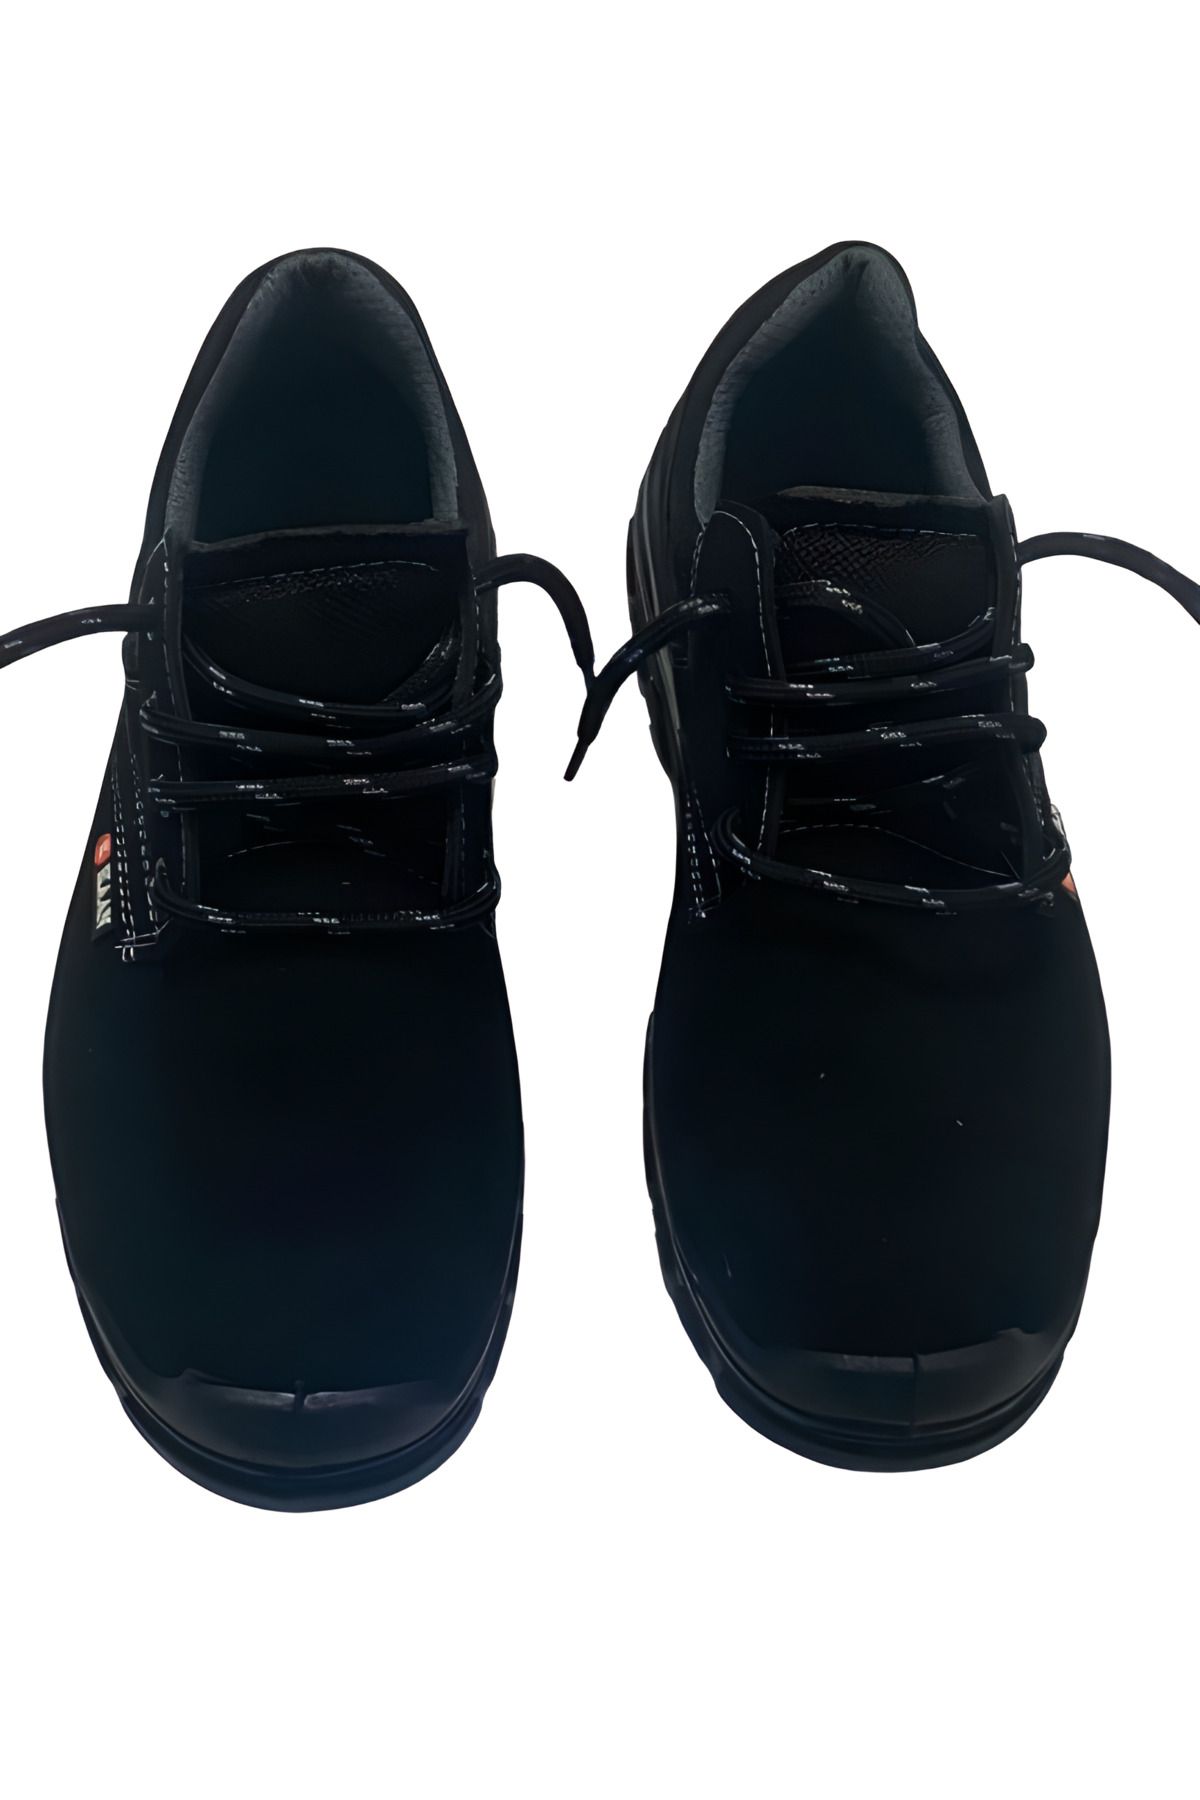 Kaan Magical Story S-1 Ortopedik Su Geçirmez Çelik Burunlu Siyah Süet İş Ayakkabısı